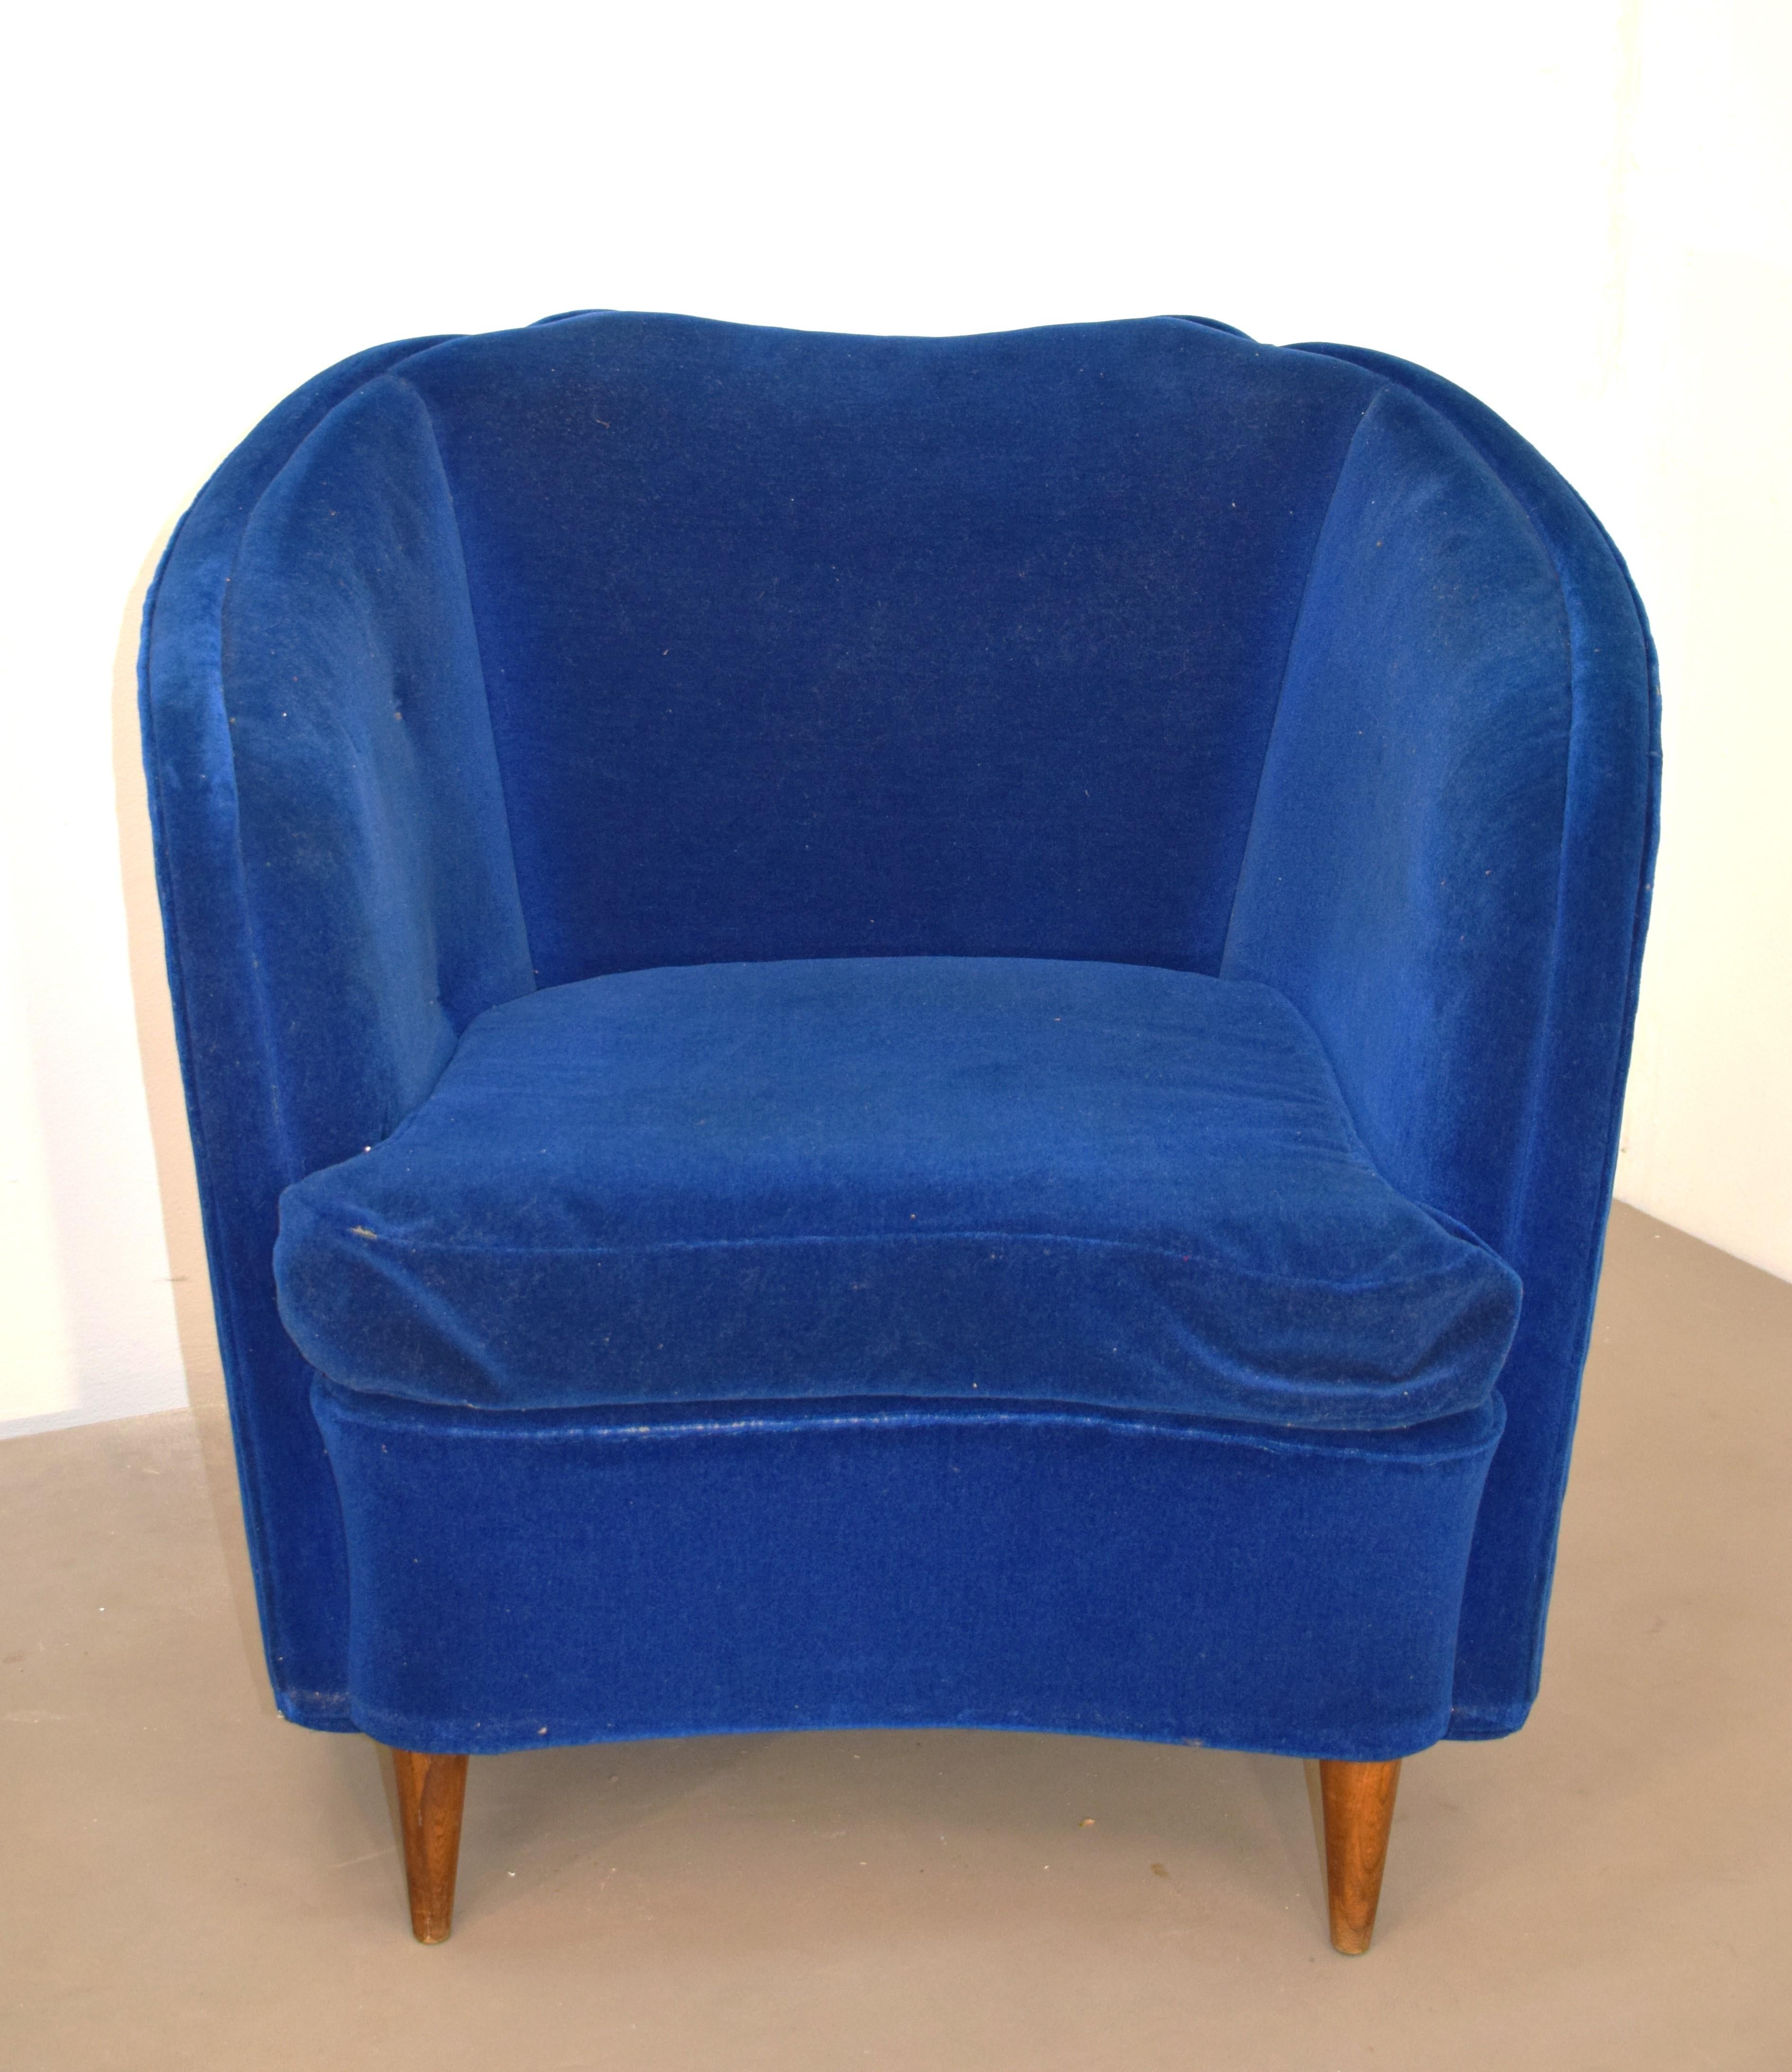 Ein Paar italienische Sessel, 1950er Jahre.
Abmessungen: H=76 cm; B= 82 cm; T= 80 cm; H-Sitz= 44 cm.